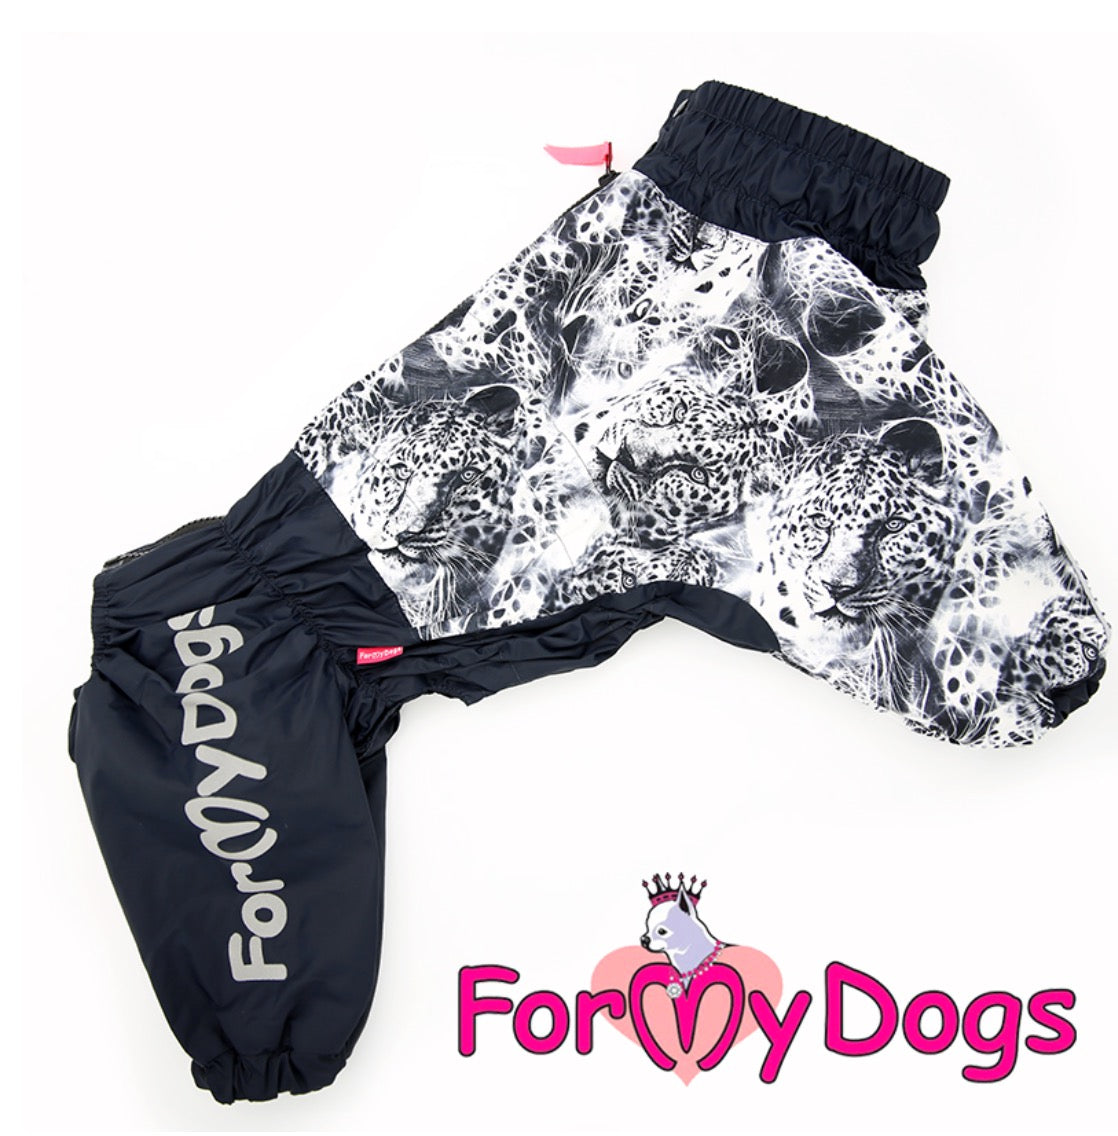 ForMyDogs - "Panther" koiran sadehaalari, keskikokoinen/iso koira, uroksen malli